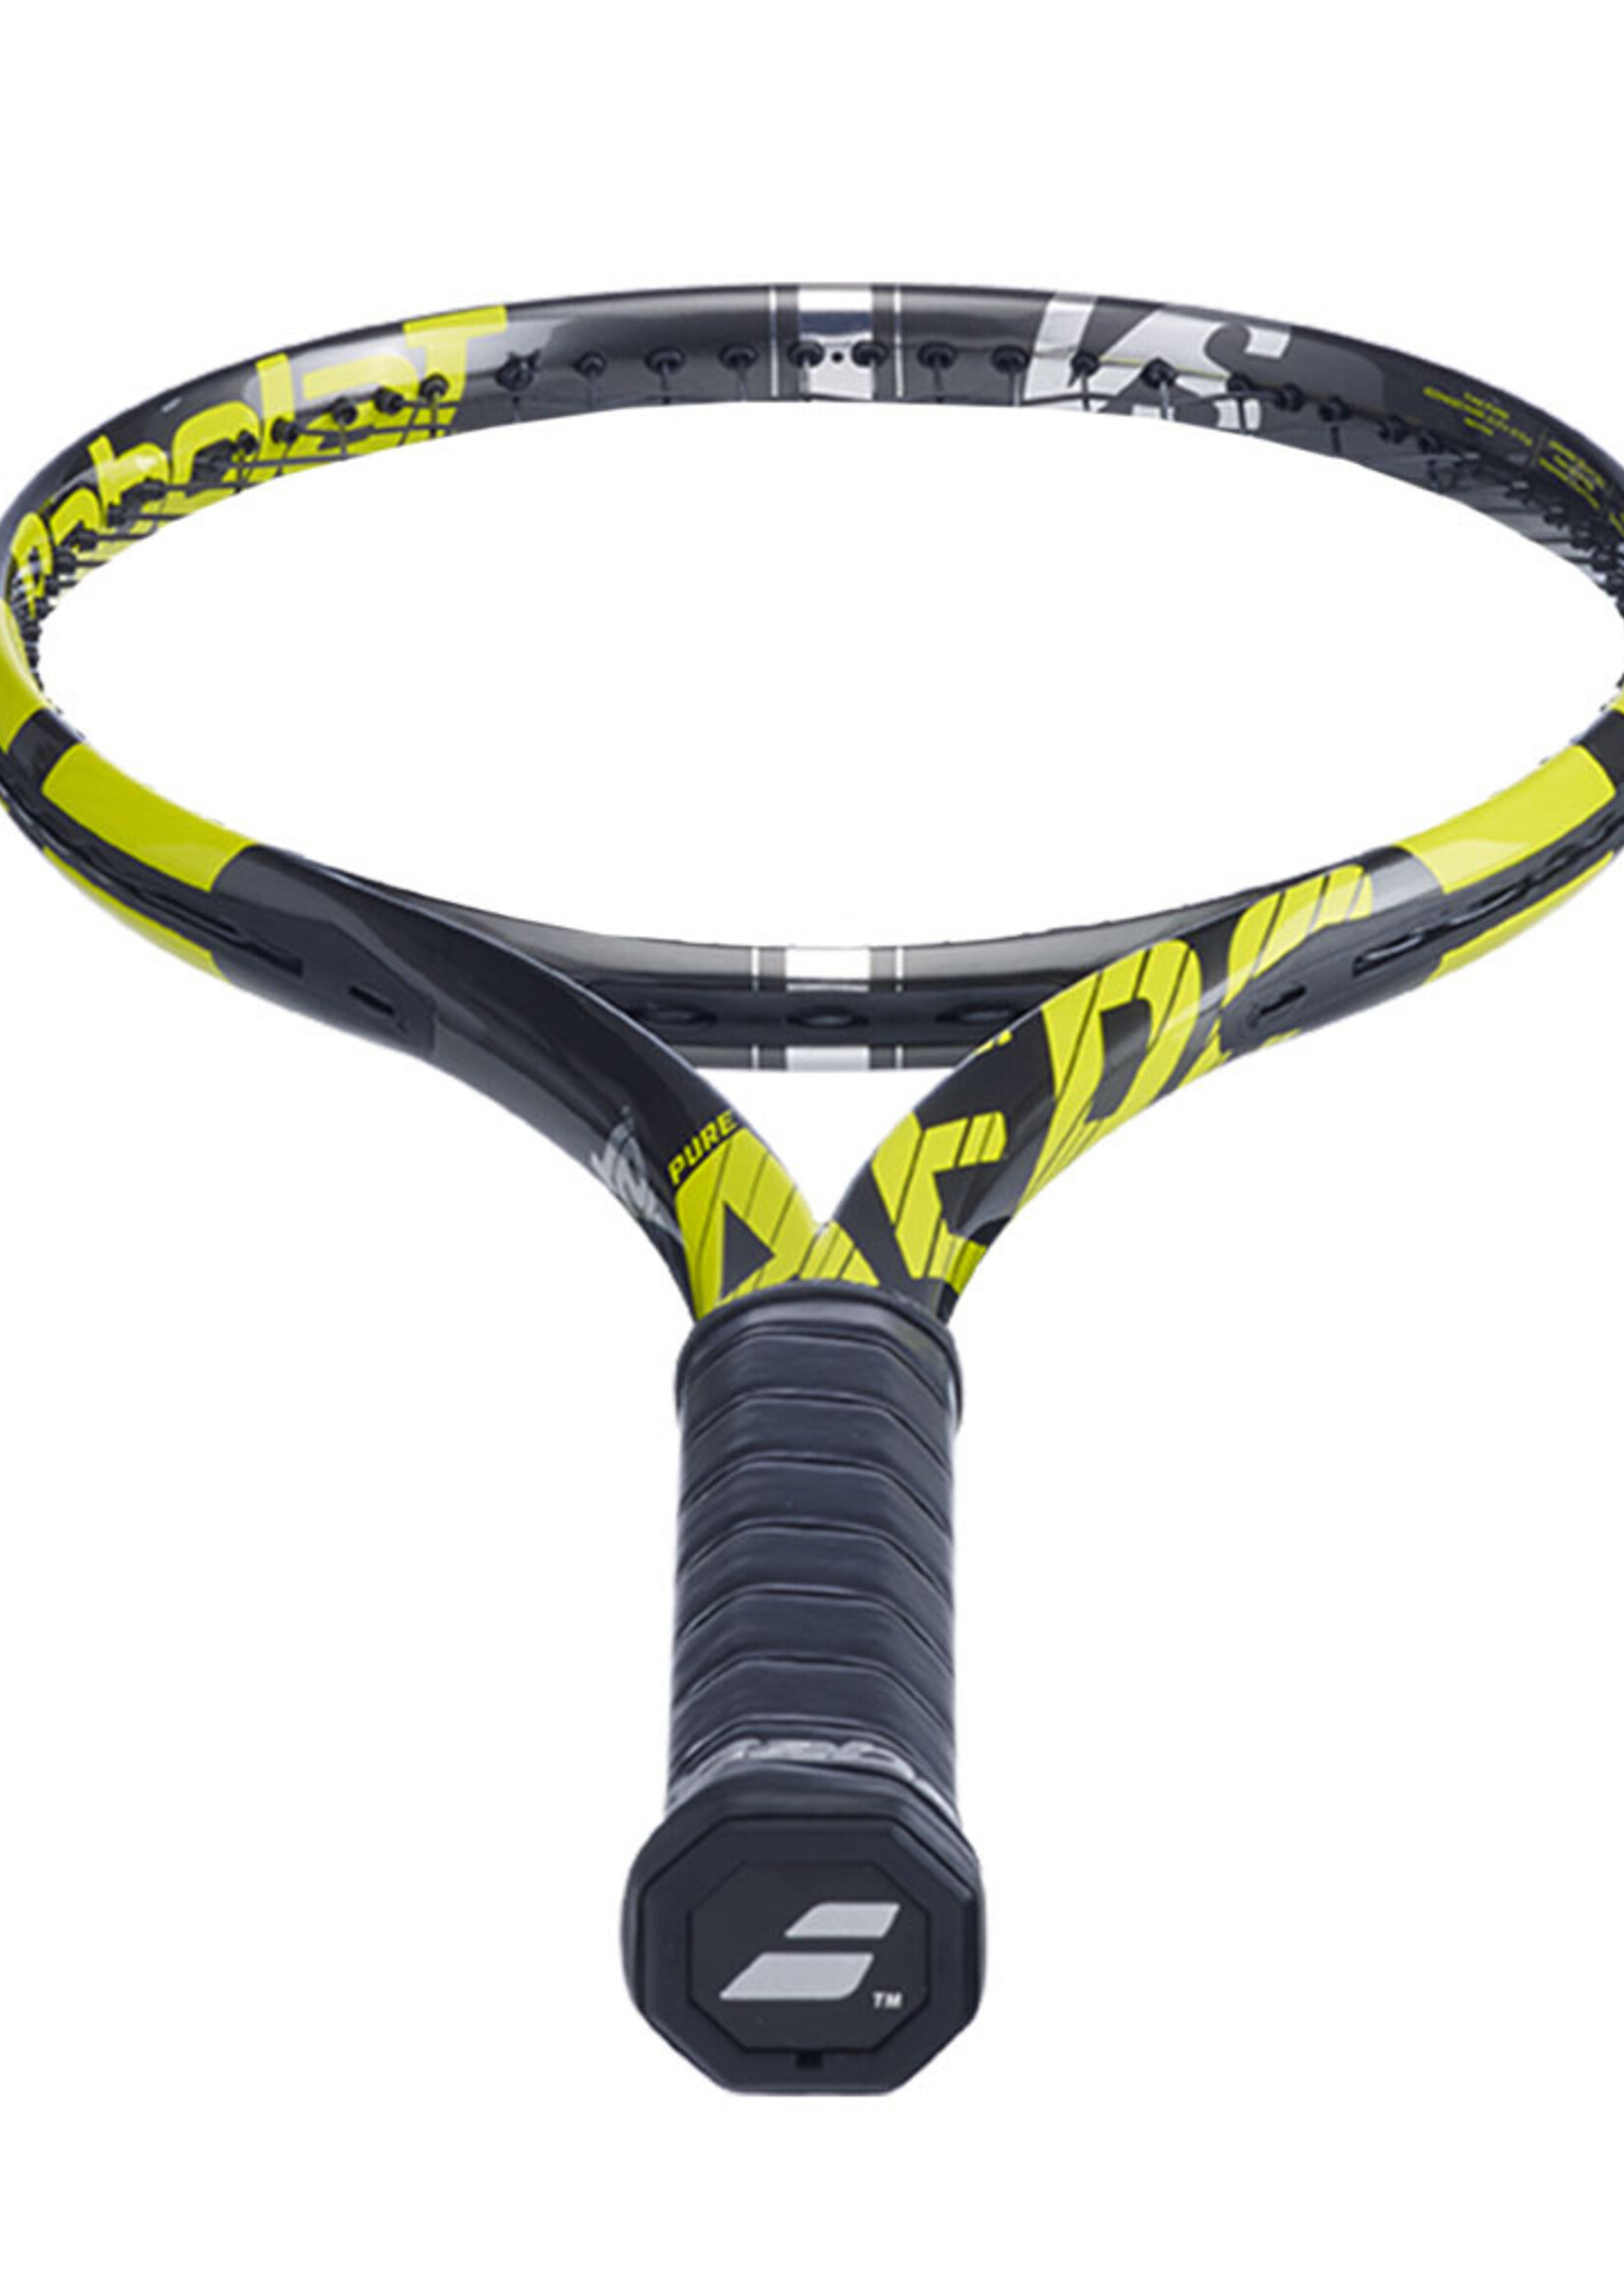 Babolat Babolat Pure Aero VS (305g) Tennis Racquet